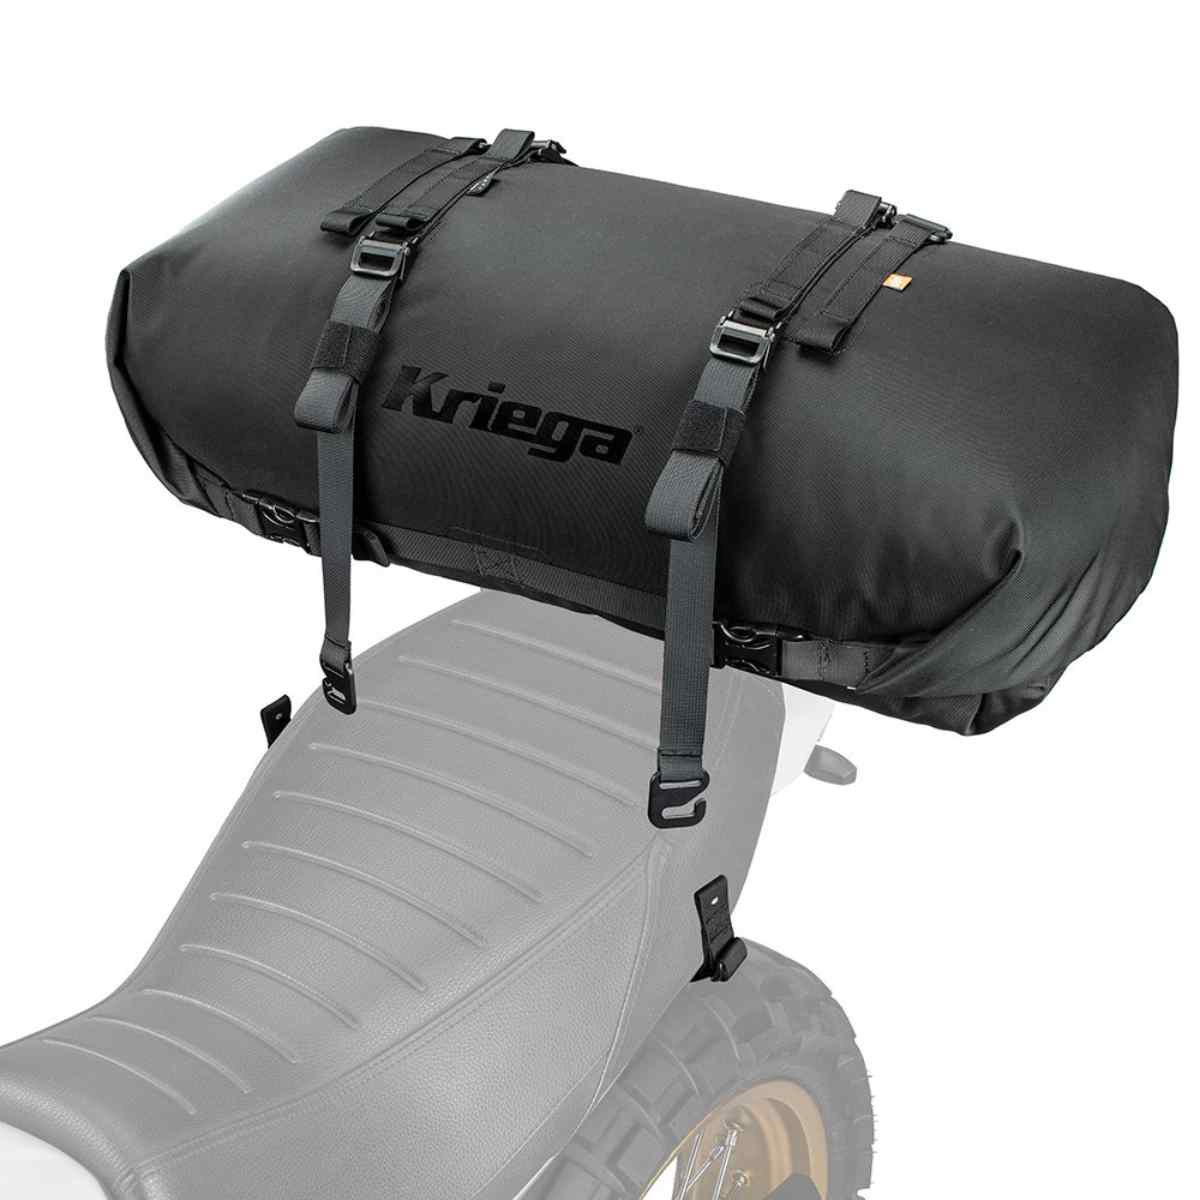 Kriega Rollpack 40L: The ultimate waterproof luggage solution